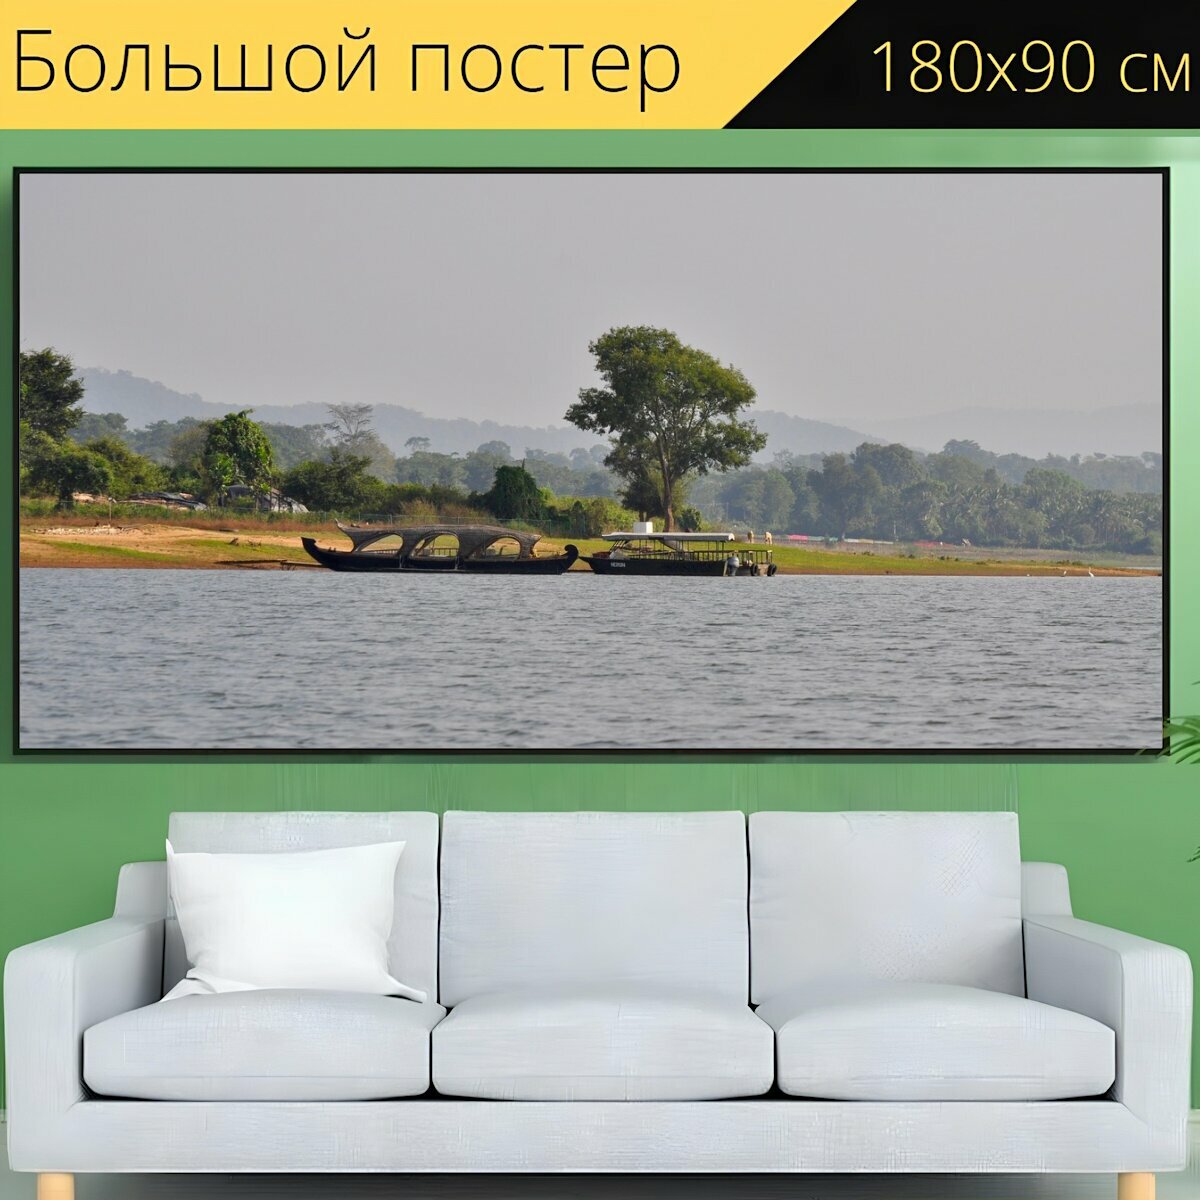 Большой постер "Плавучий дом, река, вода" 180 x 90 см. для интерьера